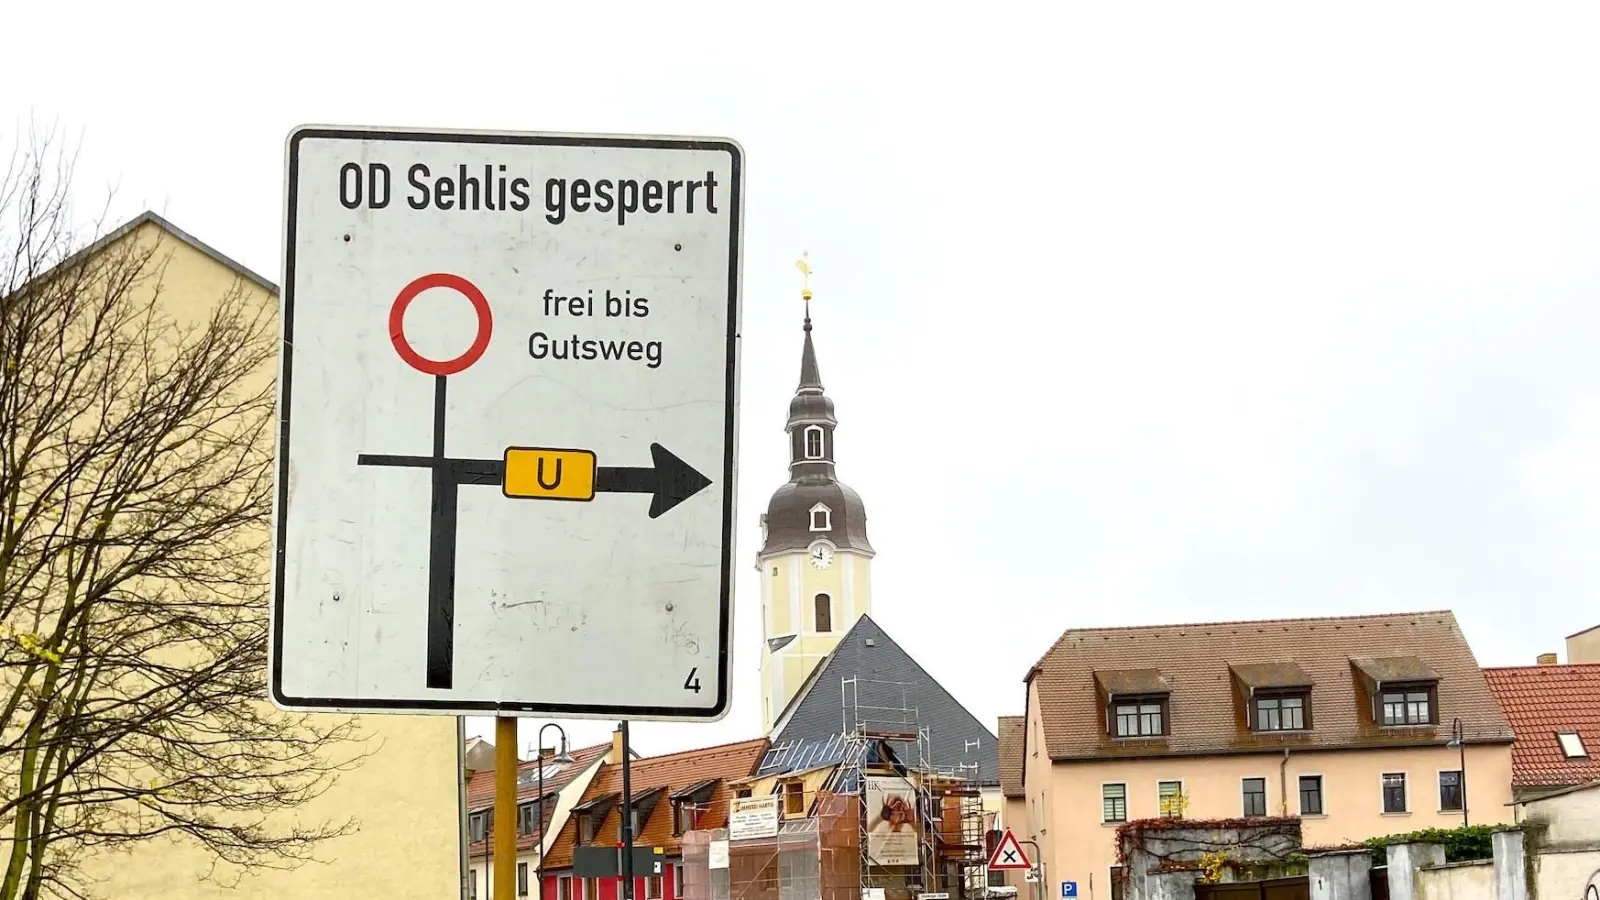 Freitag und Samstag: Ortsdurchfahrt Sehlis gesperrt (Foto: taucha-kompakt.de)